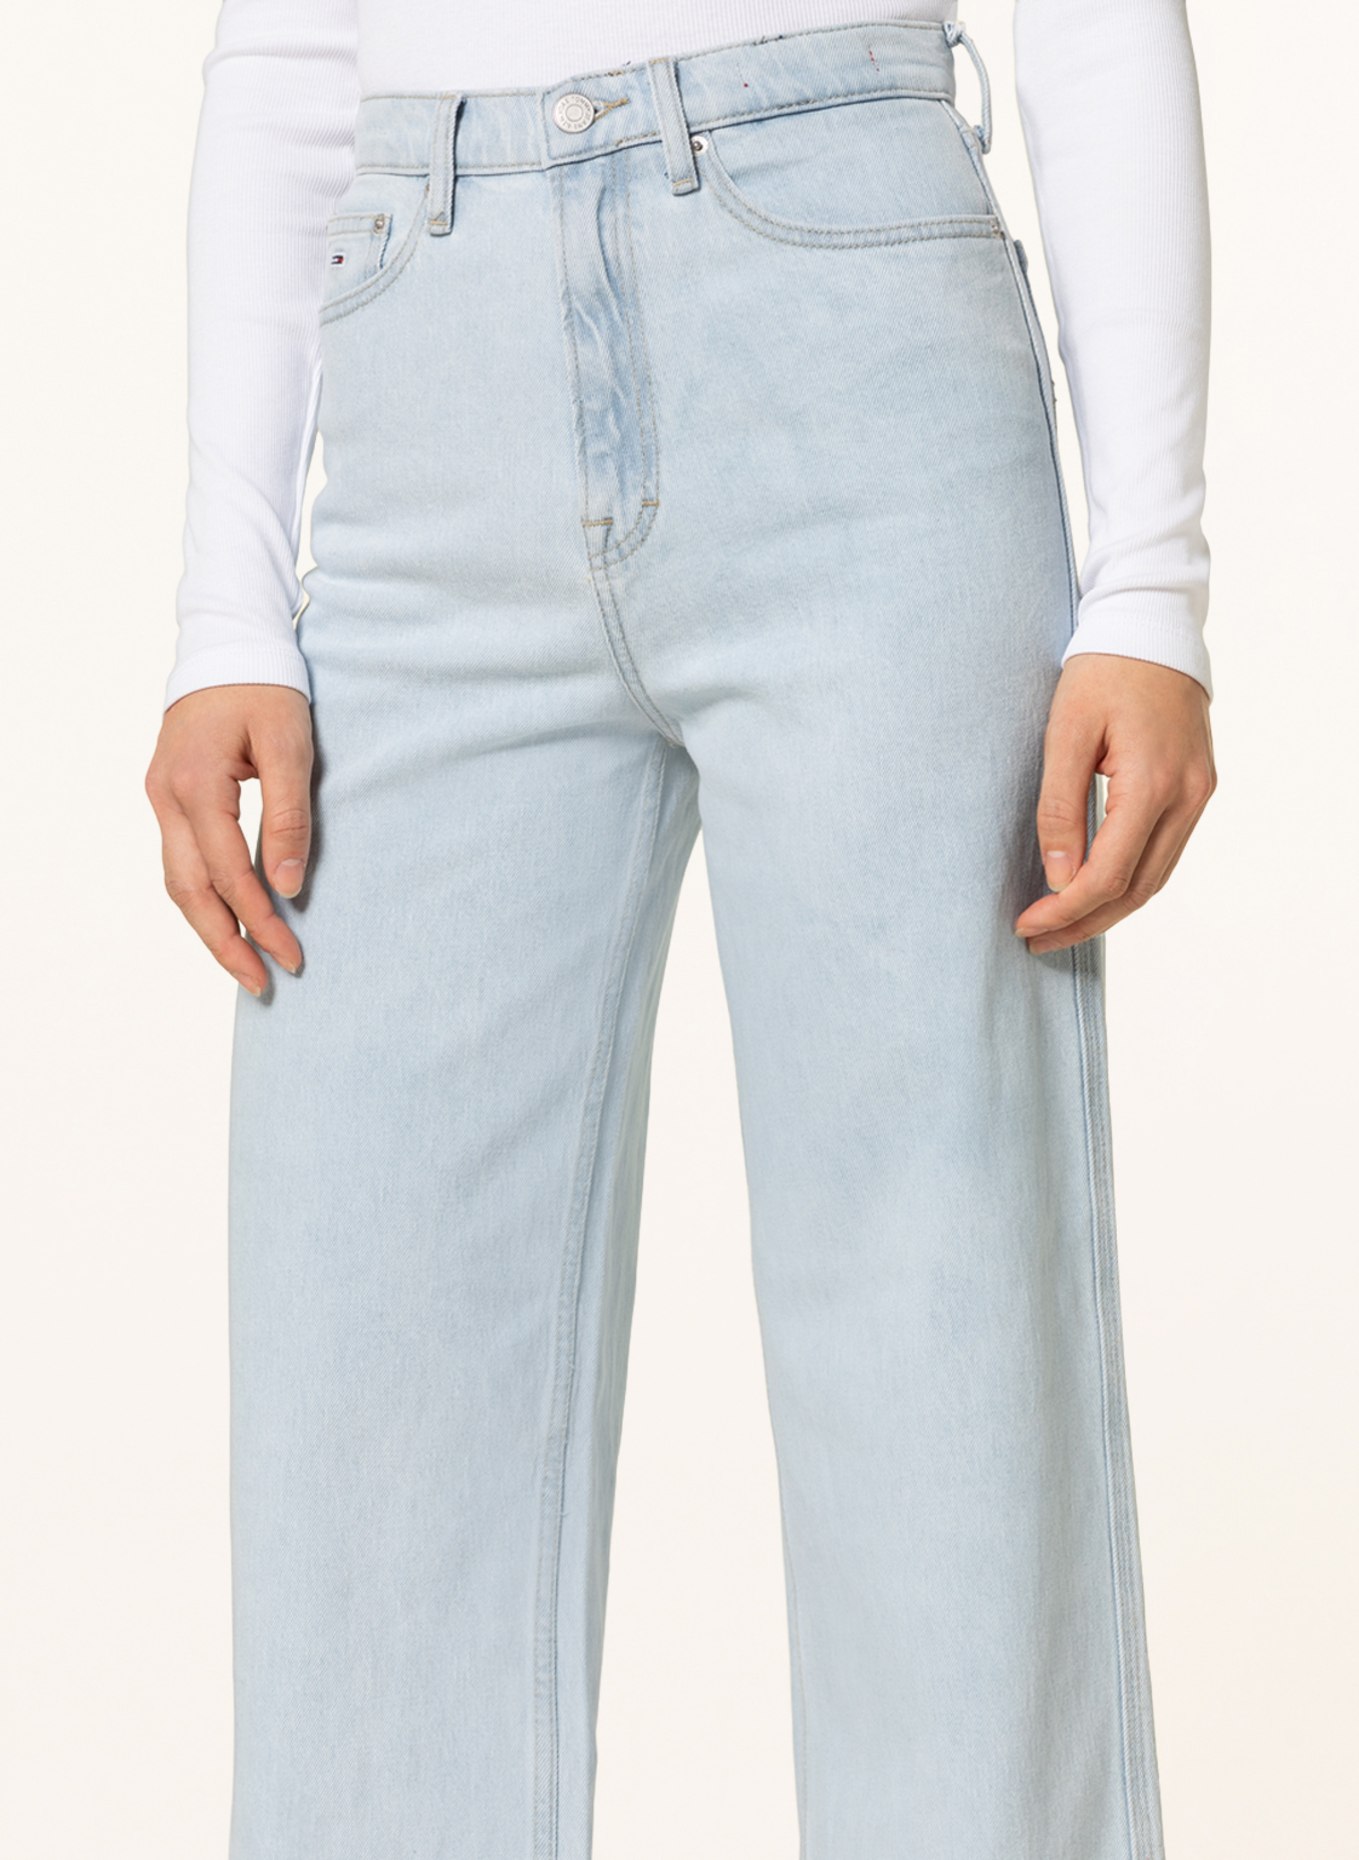 TOMMY JEANS Jeans CLAIRE, Color: 1AB Denim Light (Image 5)